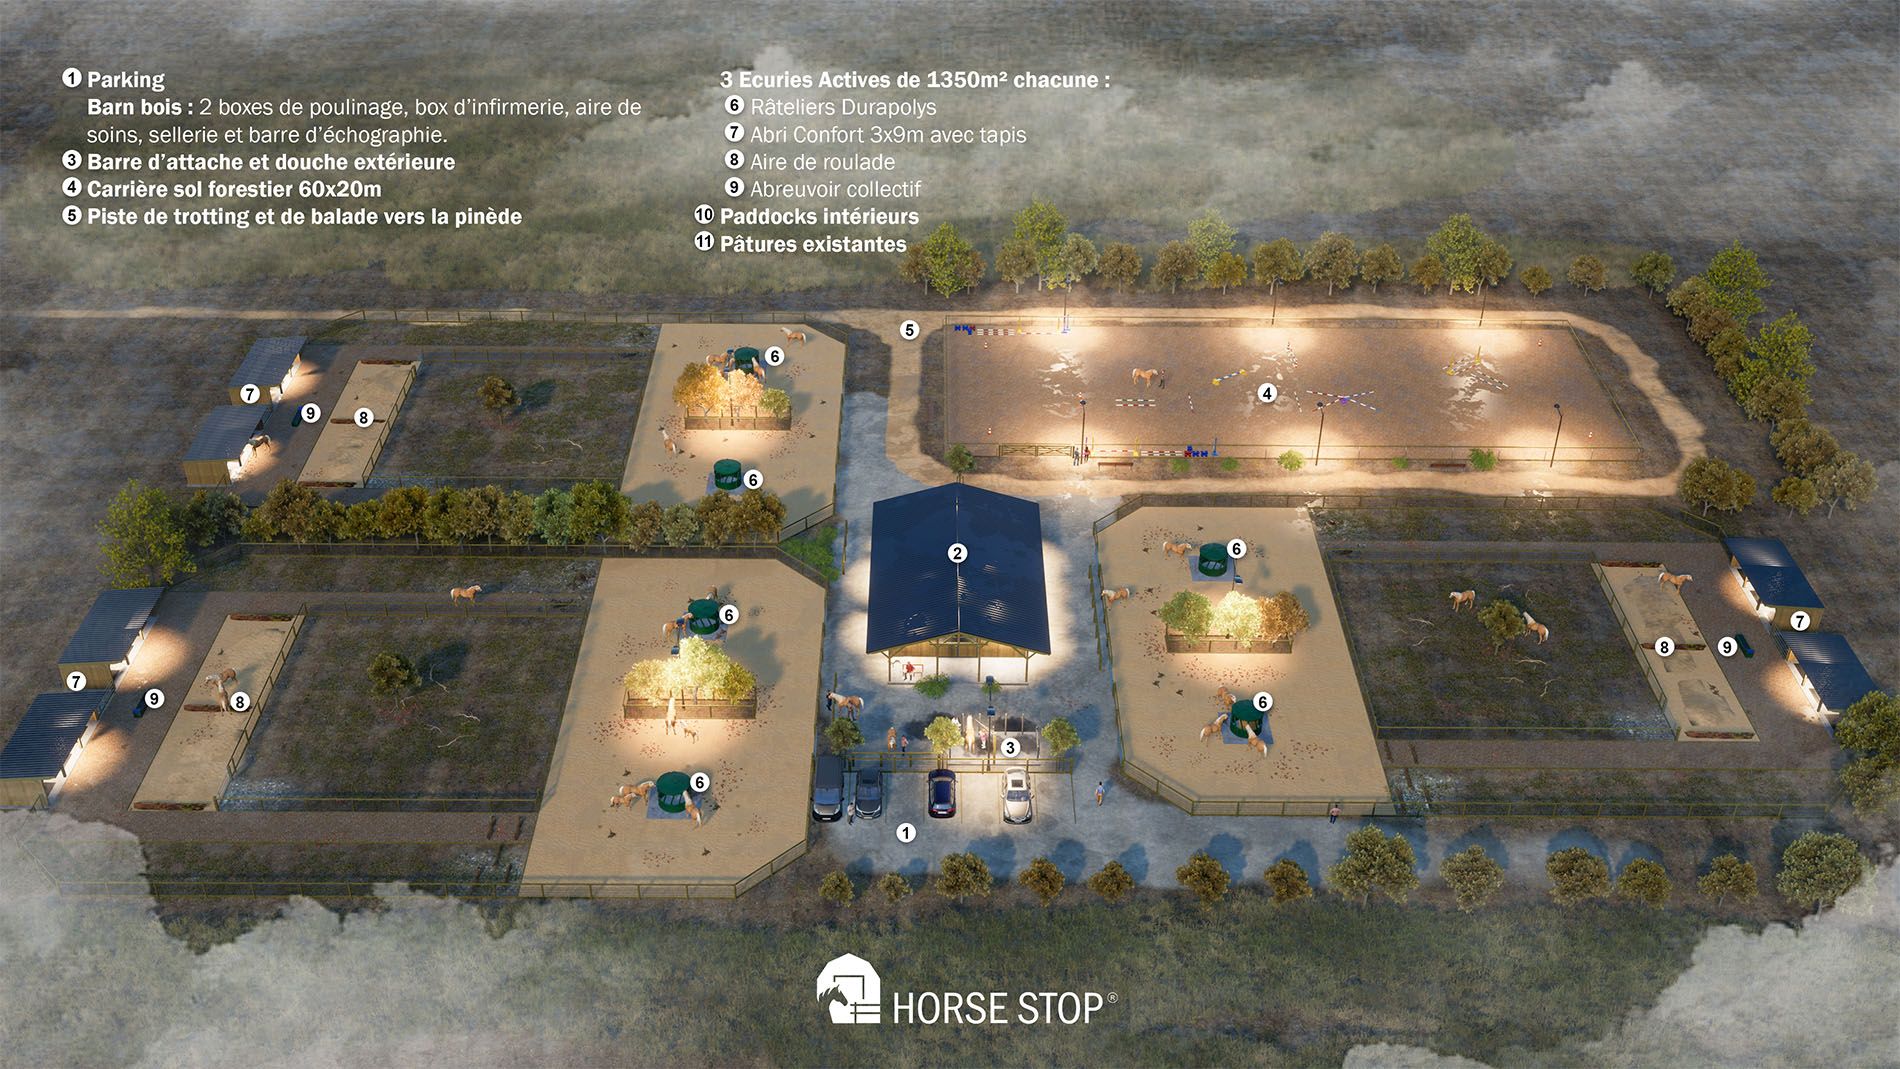 vue aérienne réalisation 3d d'une écurie entre fonctionnalité et bien-être équin pour chevaux haflingers